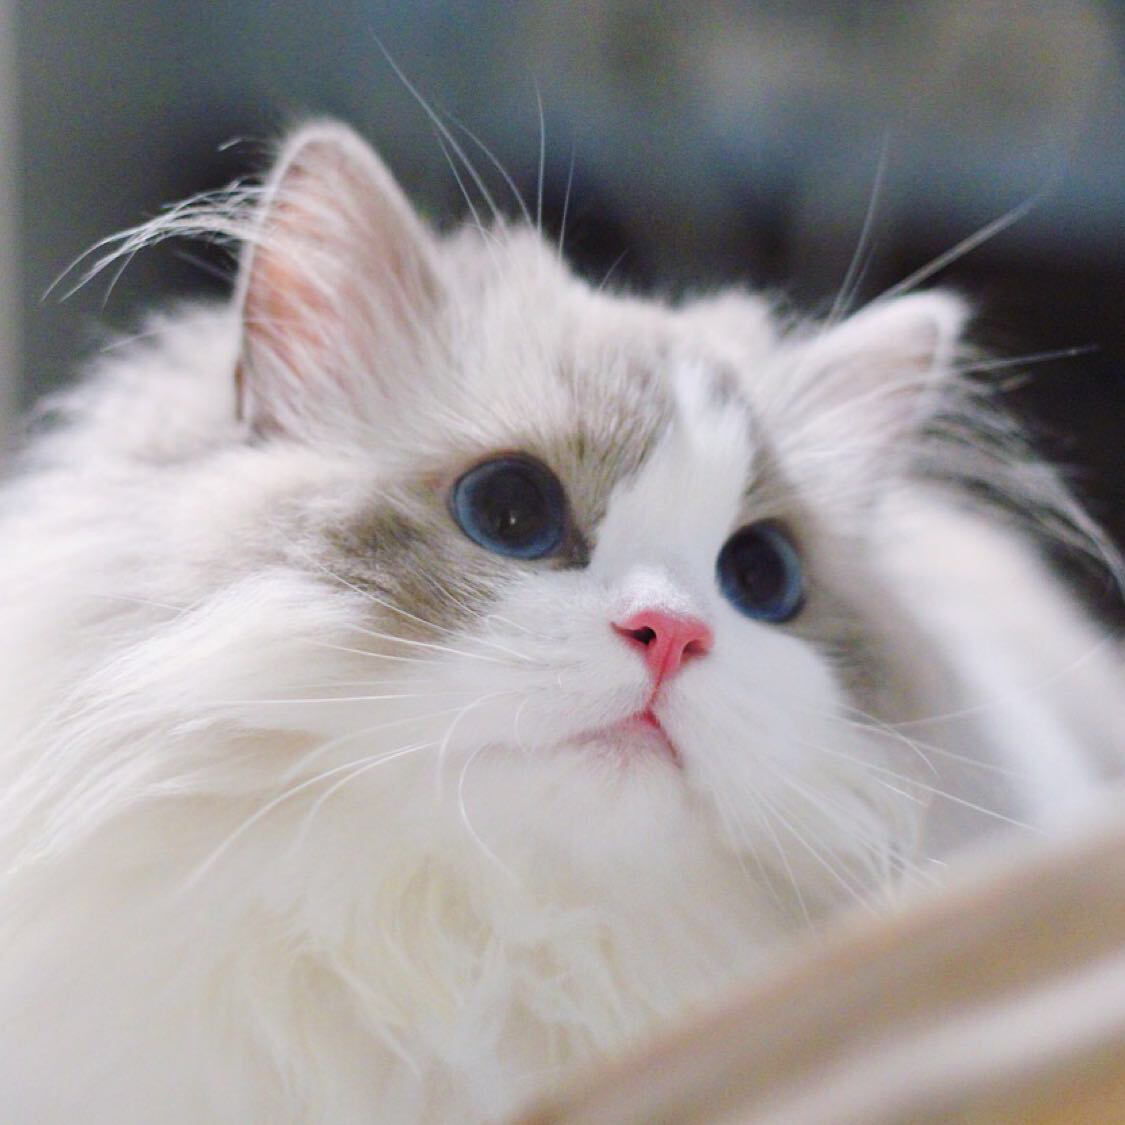 布偶猫头像高清微信图片